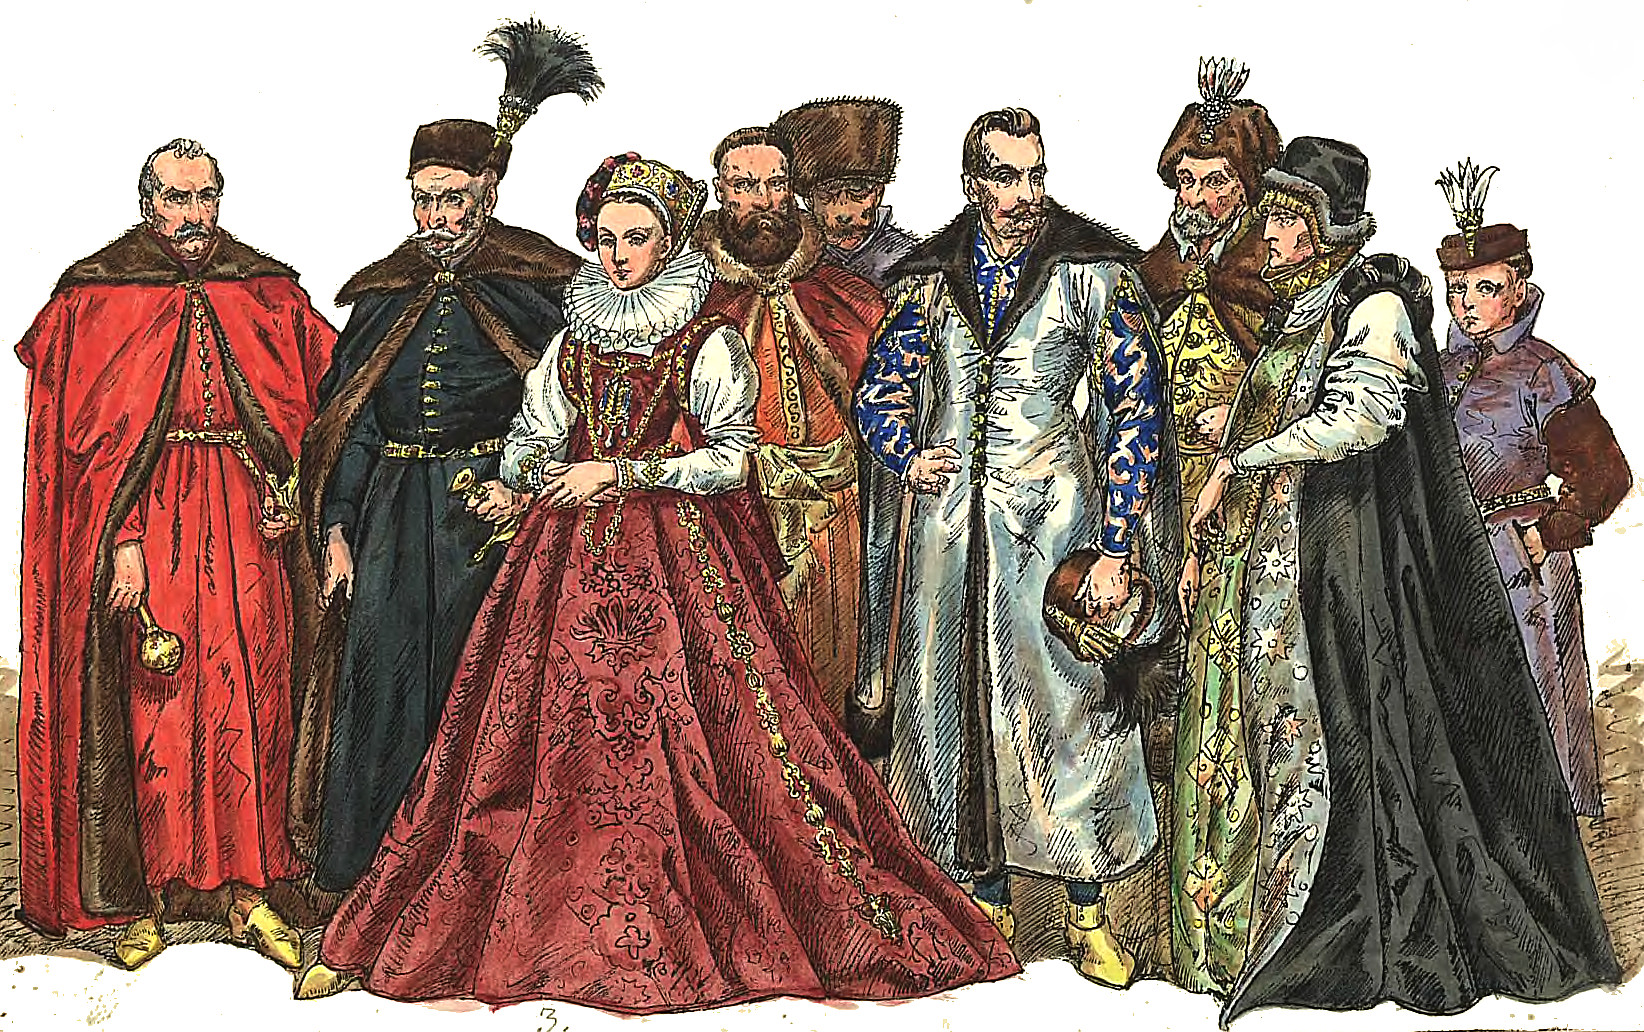 Grupa bogato ubranych szlachciców w kolorowych żupanach i deliach w towarzystwie jednej kobiety w okazałej sukni z kryzą